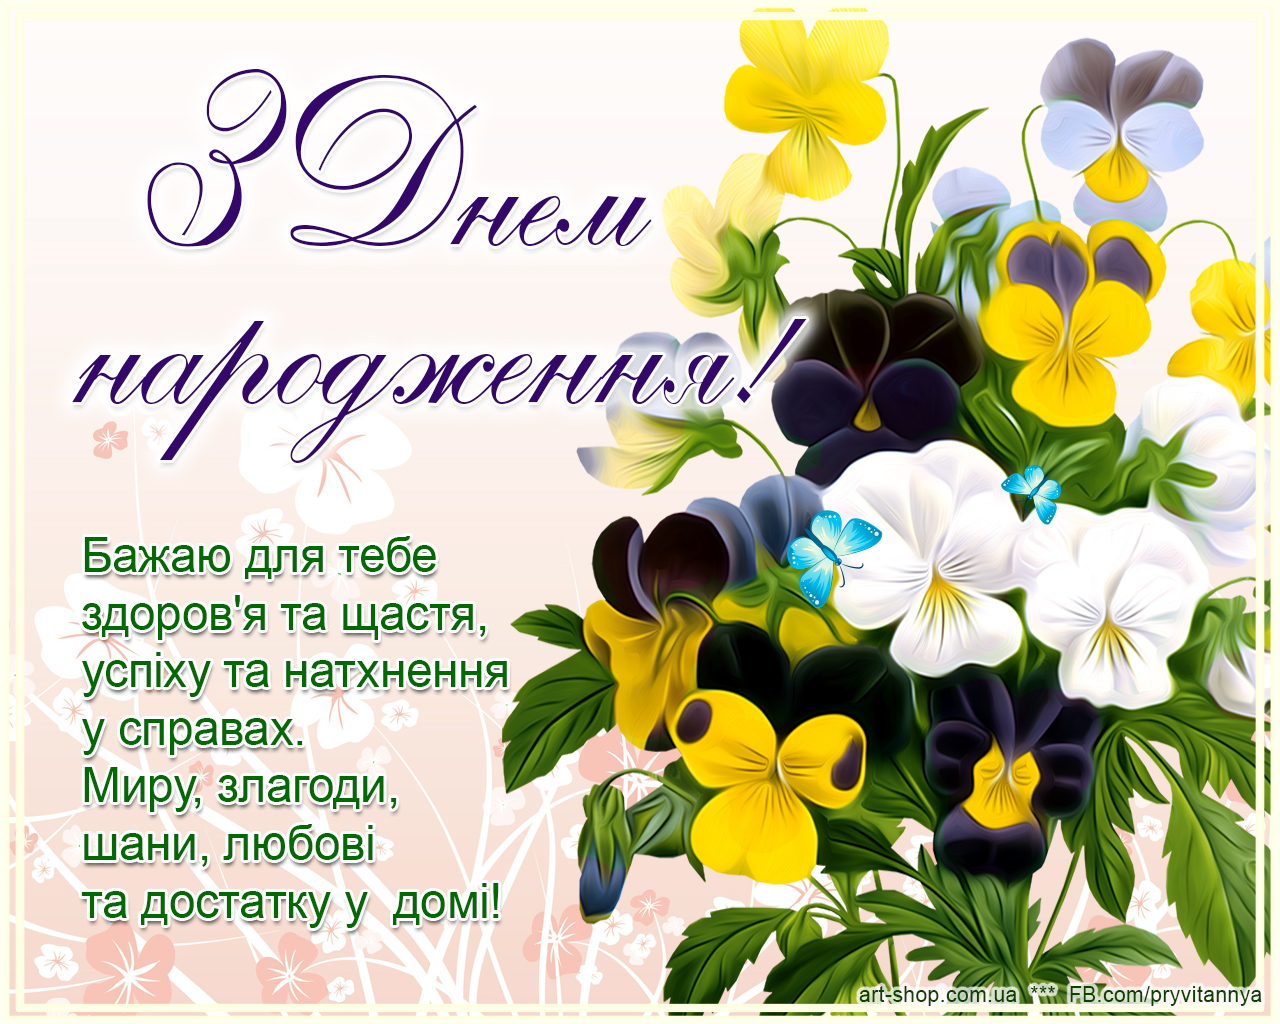 Поздравить с днем рождения на украинском. З днем народження. Привітання з днем народження. Поздравления с днём рождения на украинском языке. Листівки з днем народження.